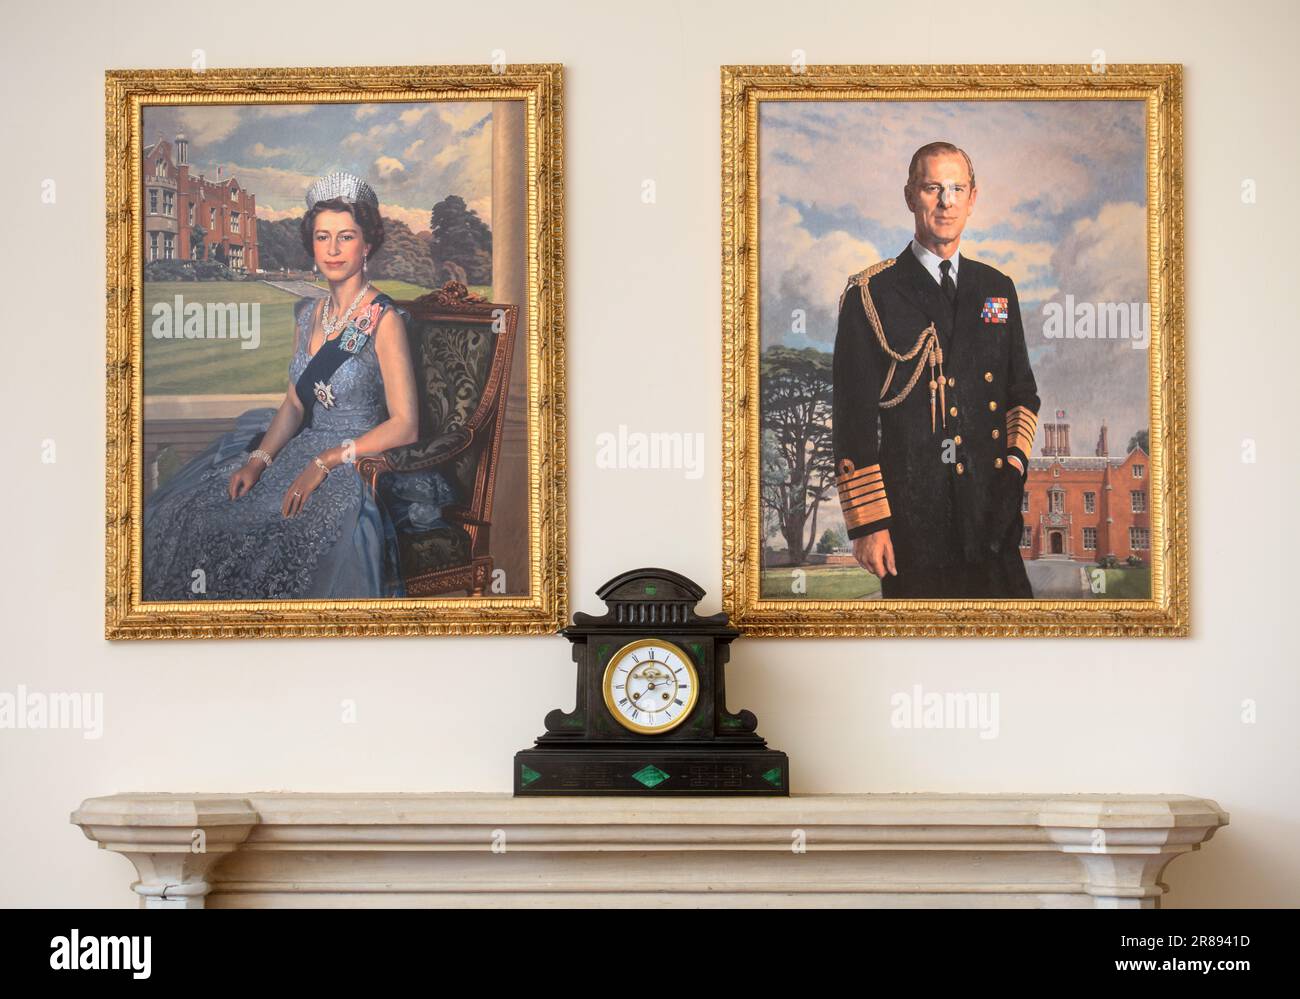 Porträts von Königin Elizabeth II. Und Prinz Phillip, die über einem Kamin in Großbritannien hängen. Stockfoto